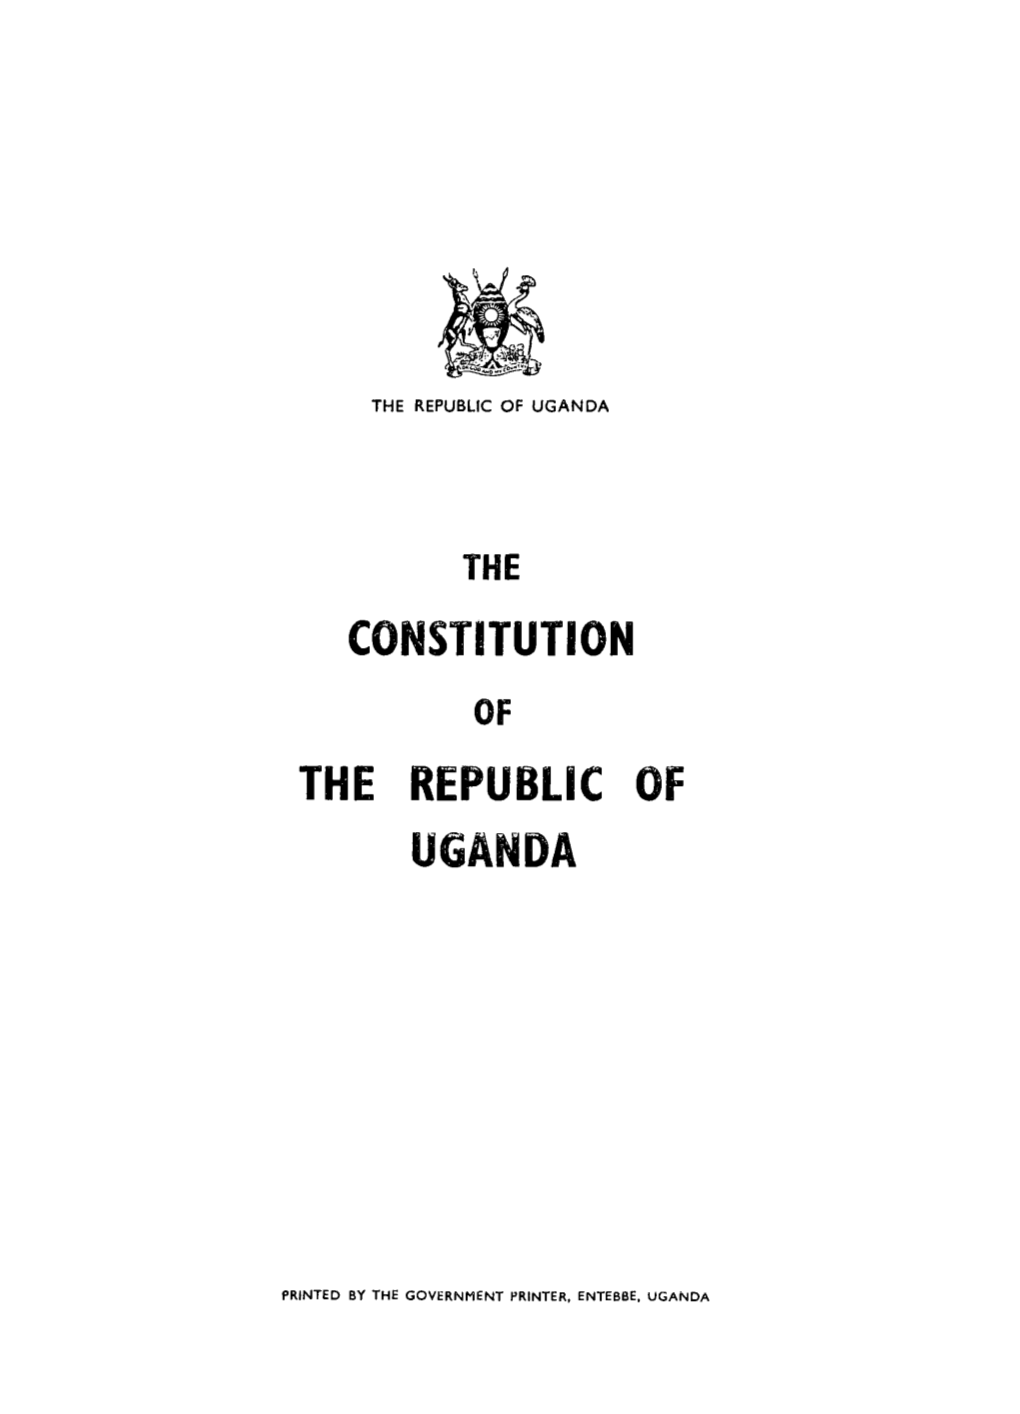 Uganda Constitution, 1967